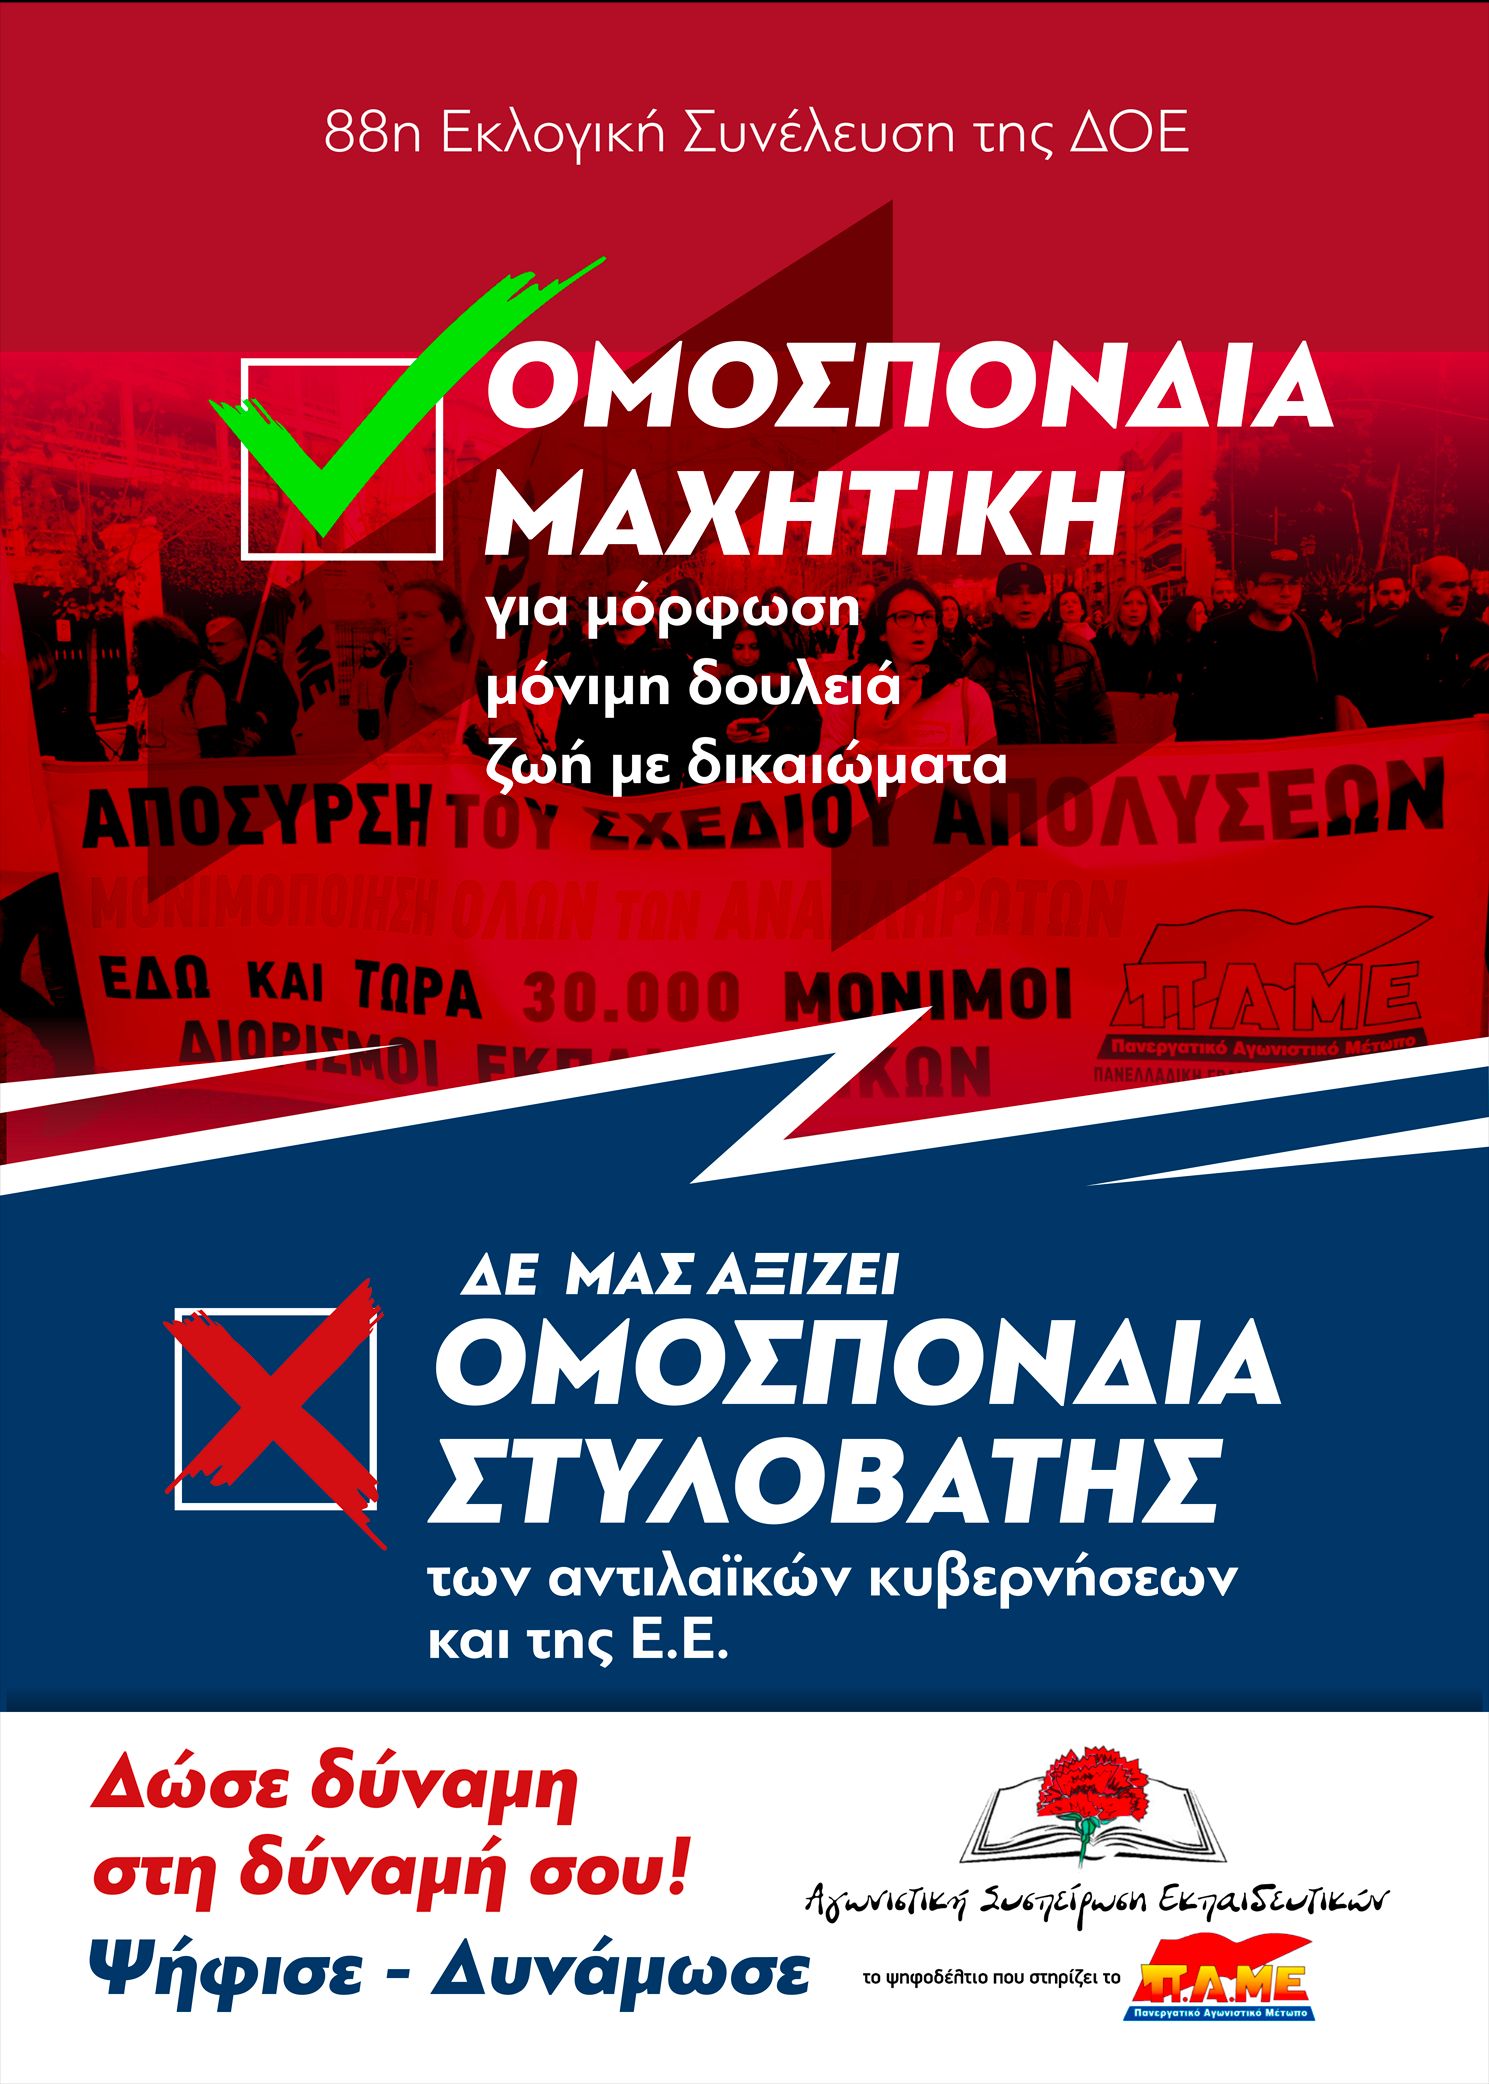 Αφίσα για εκλογές ΣΕΠΕ αντιπροσώπων για 88η ΓΣ ΔΟΕ.jpg